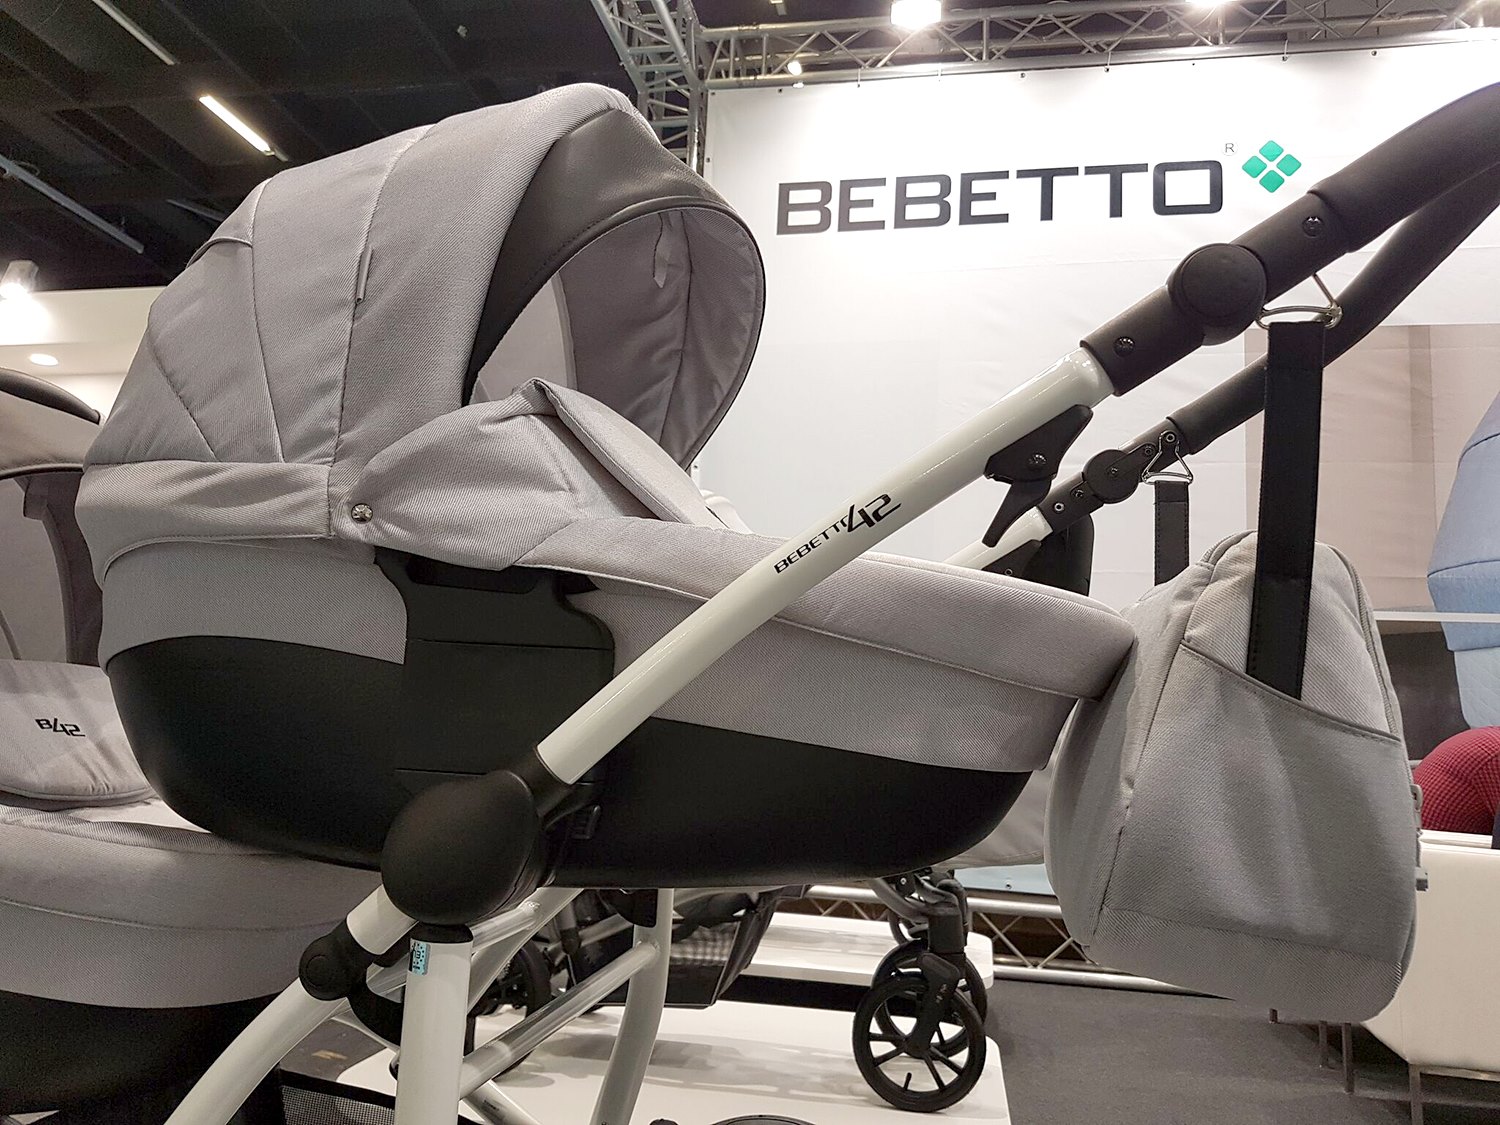 Детская коляска Bebetto42 2017 для двойни 2 в 1, светло-коричневая, шасси белая/Bia  